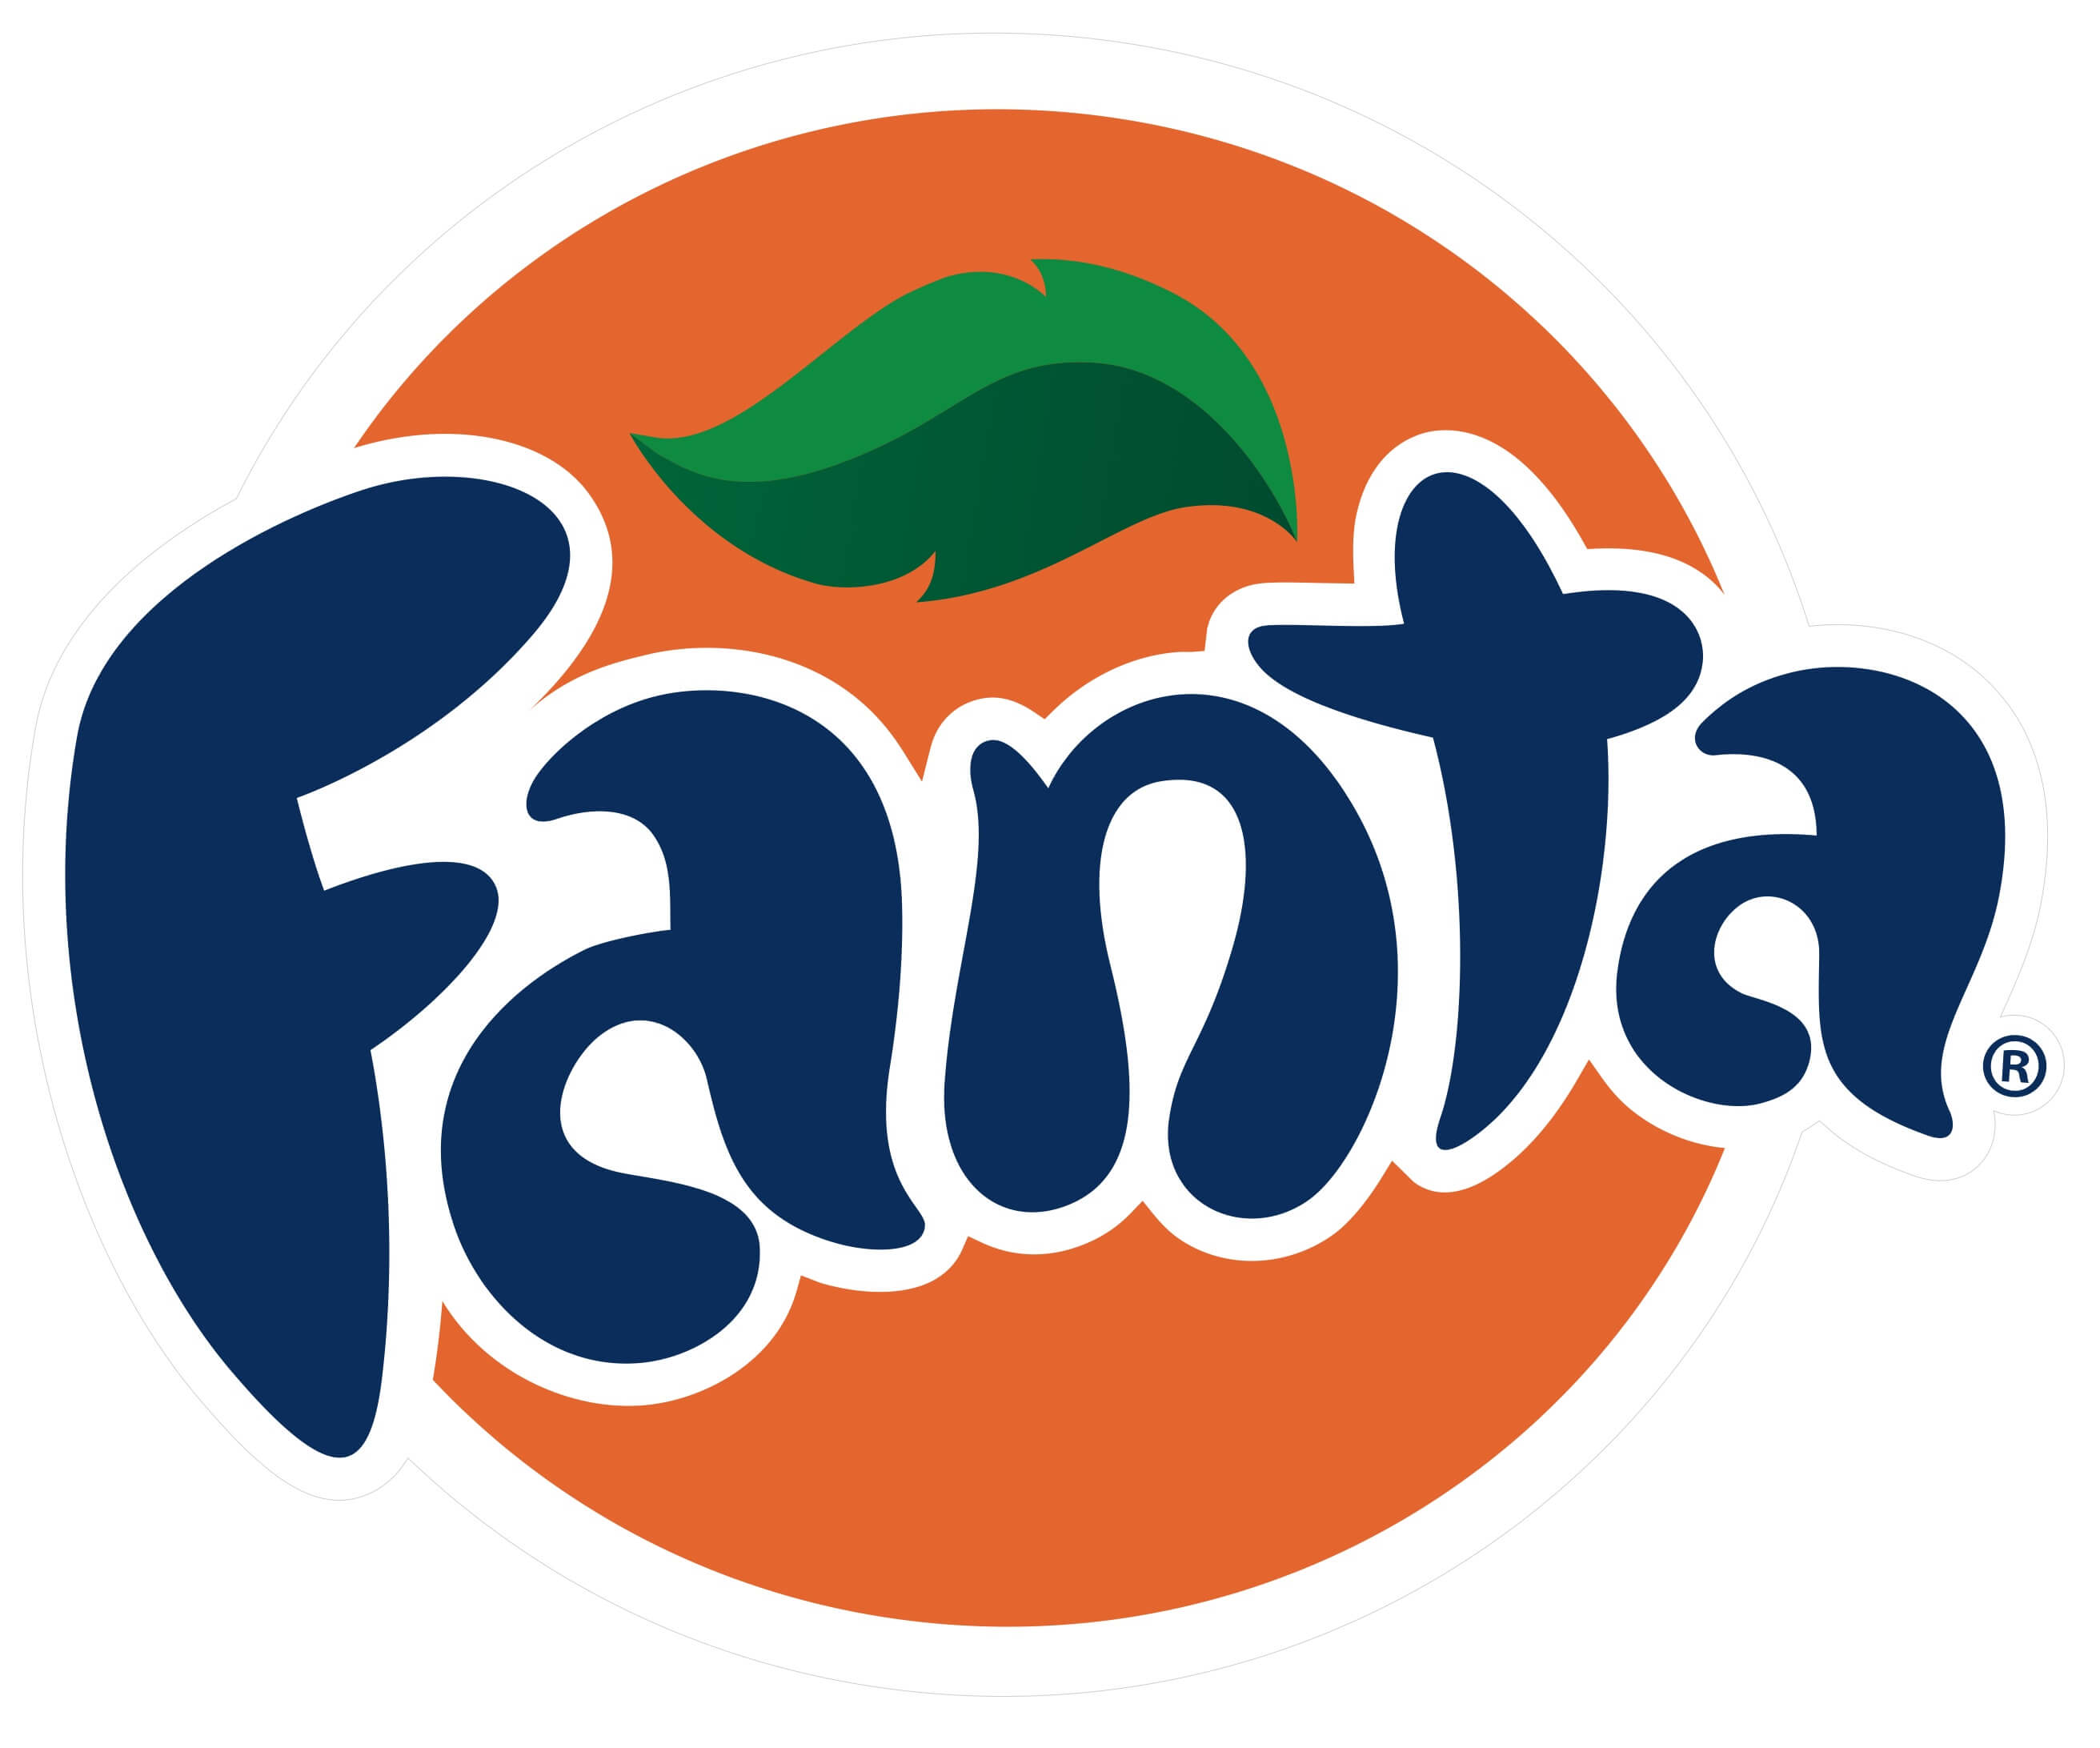 Fanta logo, logotype